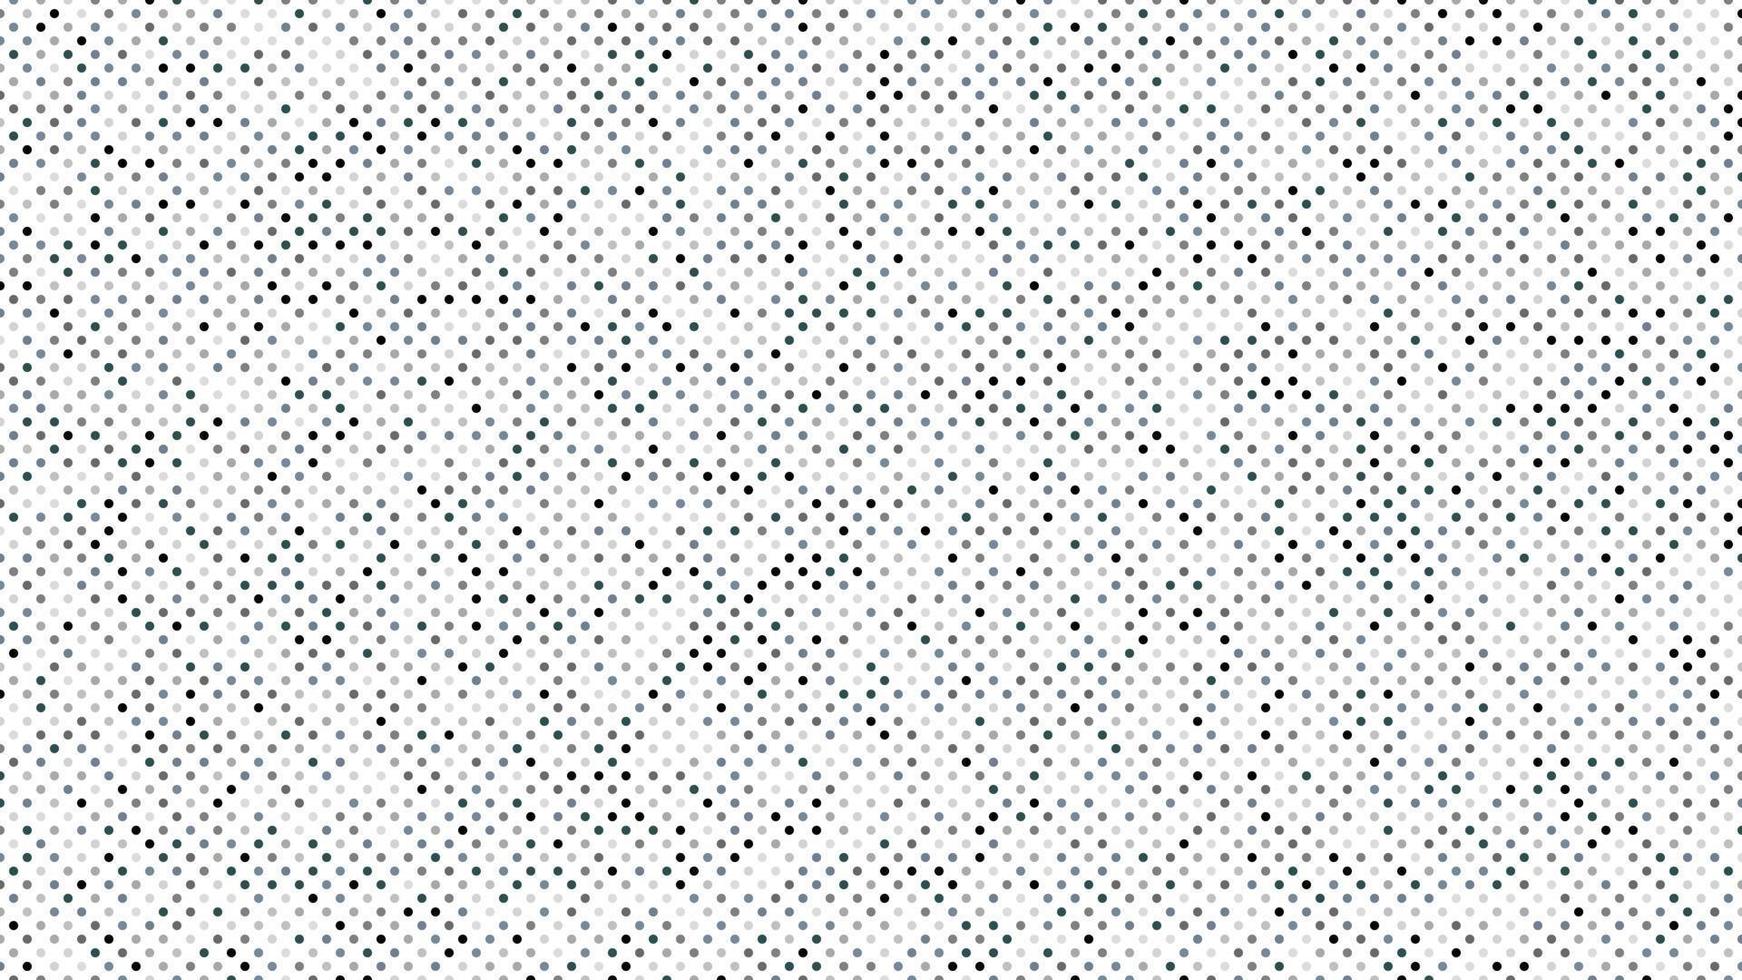 schwarz grau Farbe Polka Punkte Hintergrund vektor